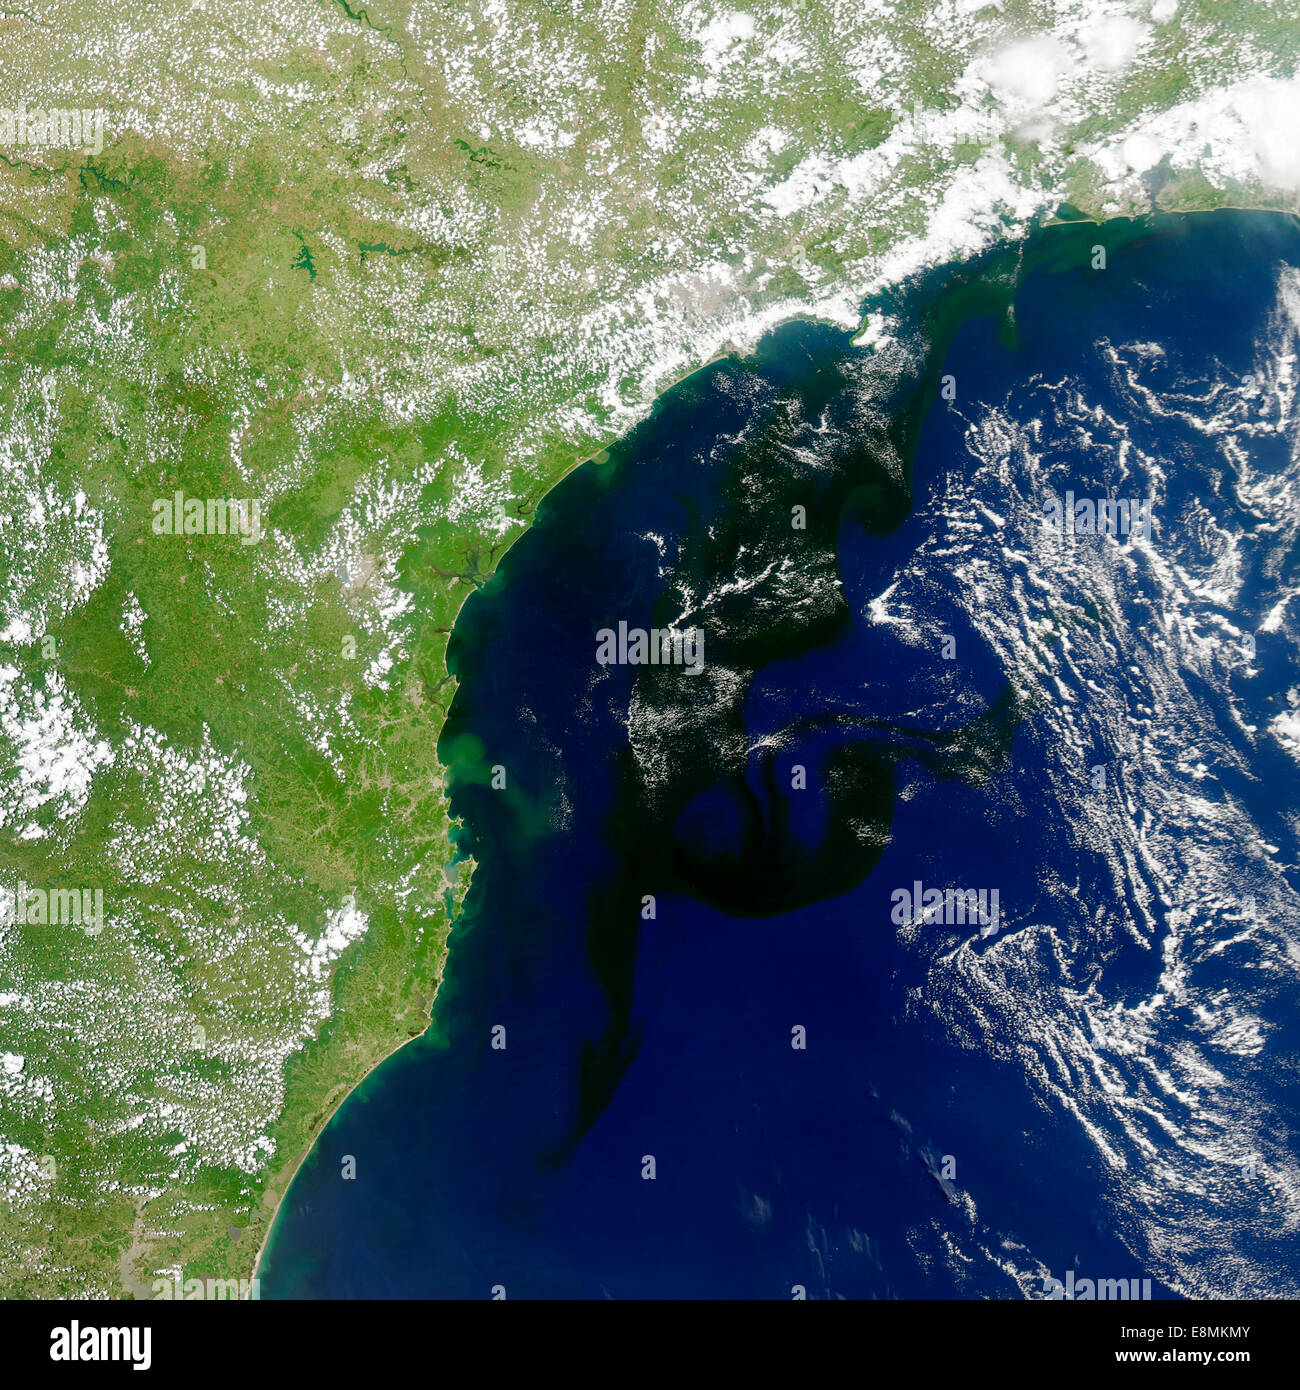 19 janvier 2014 - vue de la capture d'un bloom d'organismes microscopiques au large de la côte sud-est du Brésil. Notez comment la Banque D'Images